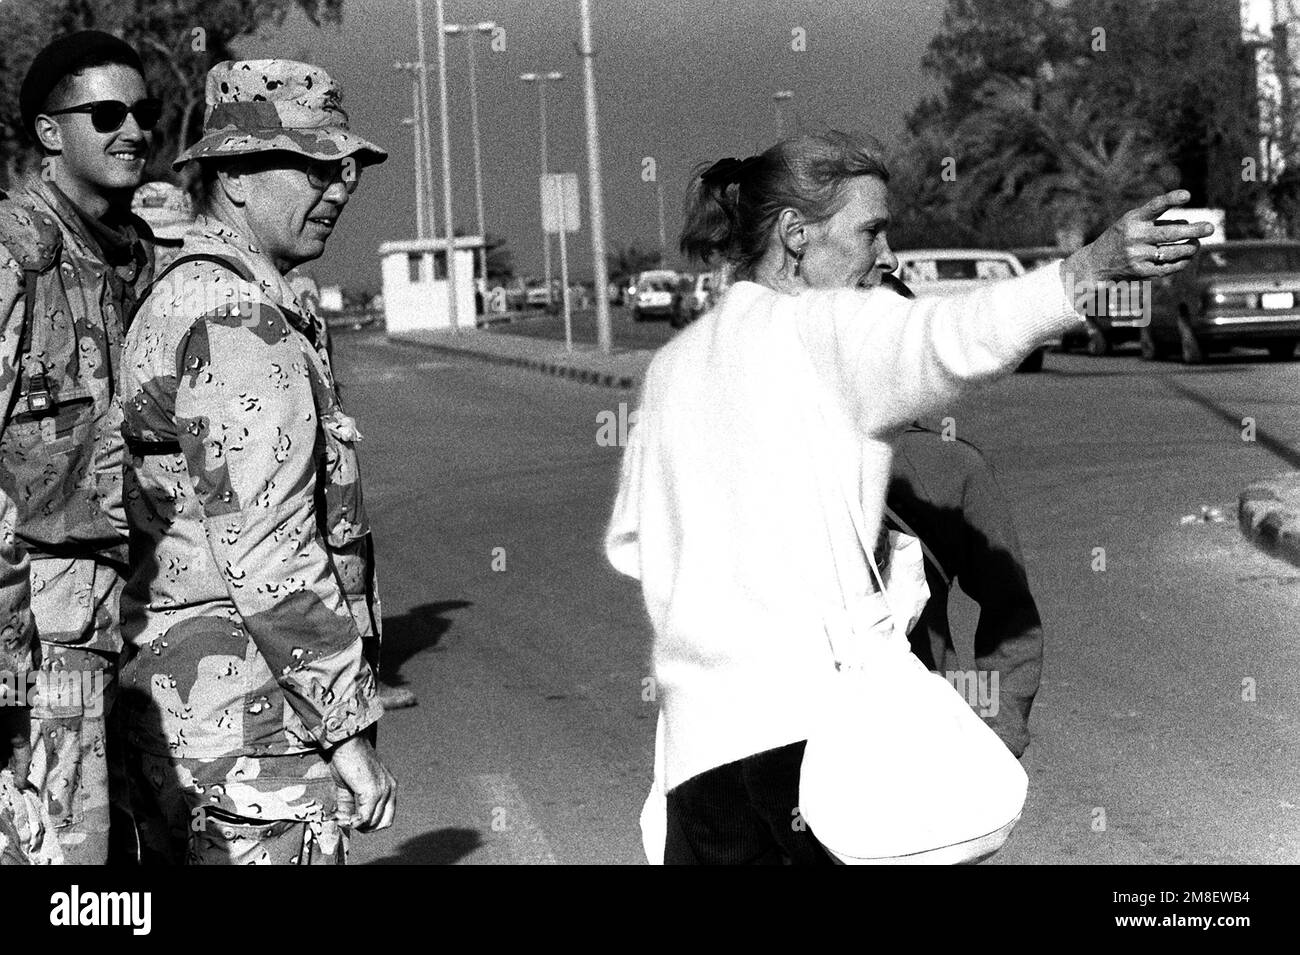 Les Marines observent un geste civil à l'encontre d'un autre passant alors que les citoyens retournent dans la ville après le retrait des forces iraquiennes pendant l'opération tempête du désert. Objet opération/série: TEMPÊTE DU DÉSERT base: Koweït ville pays: Koweït (KWT) Banque D'Images